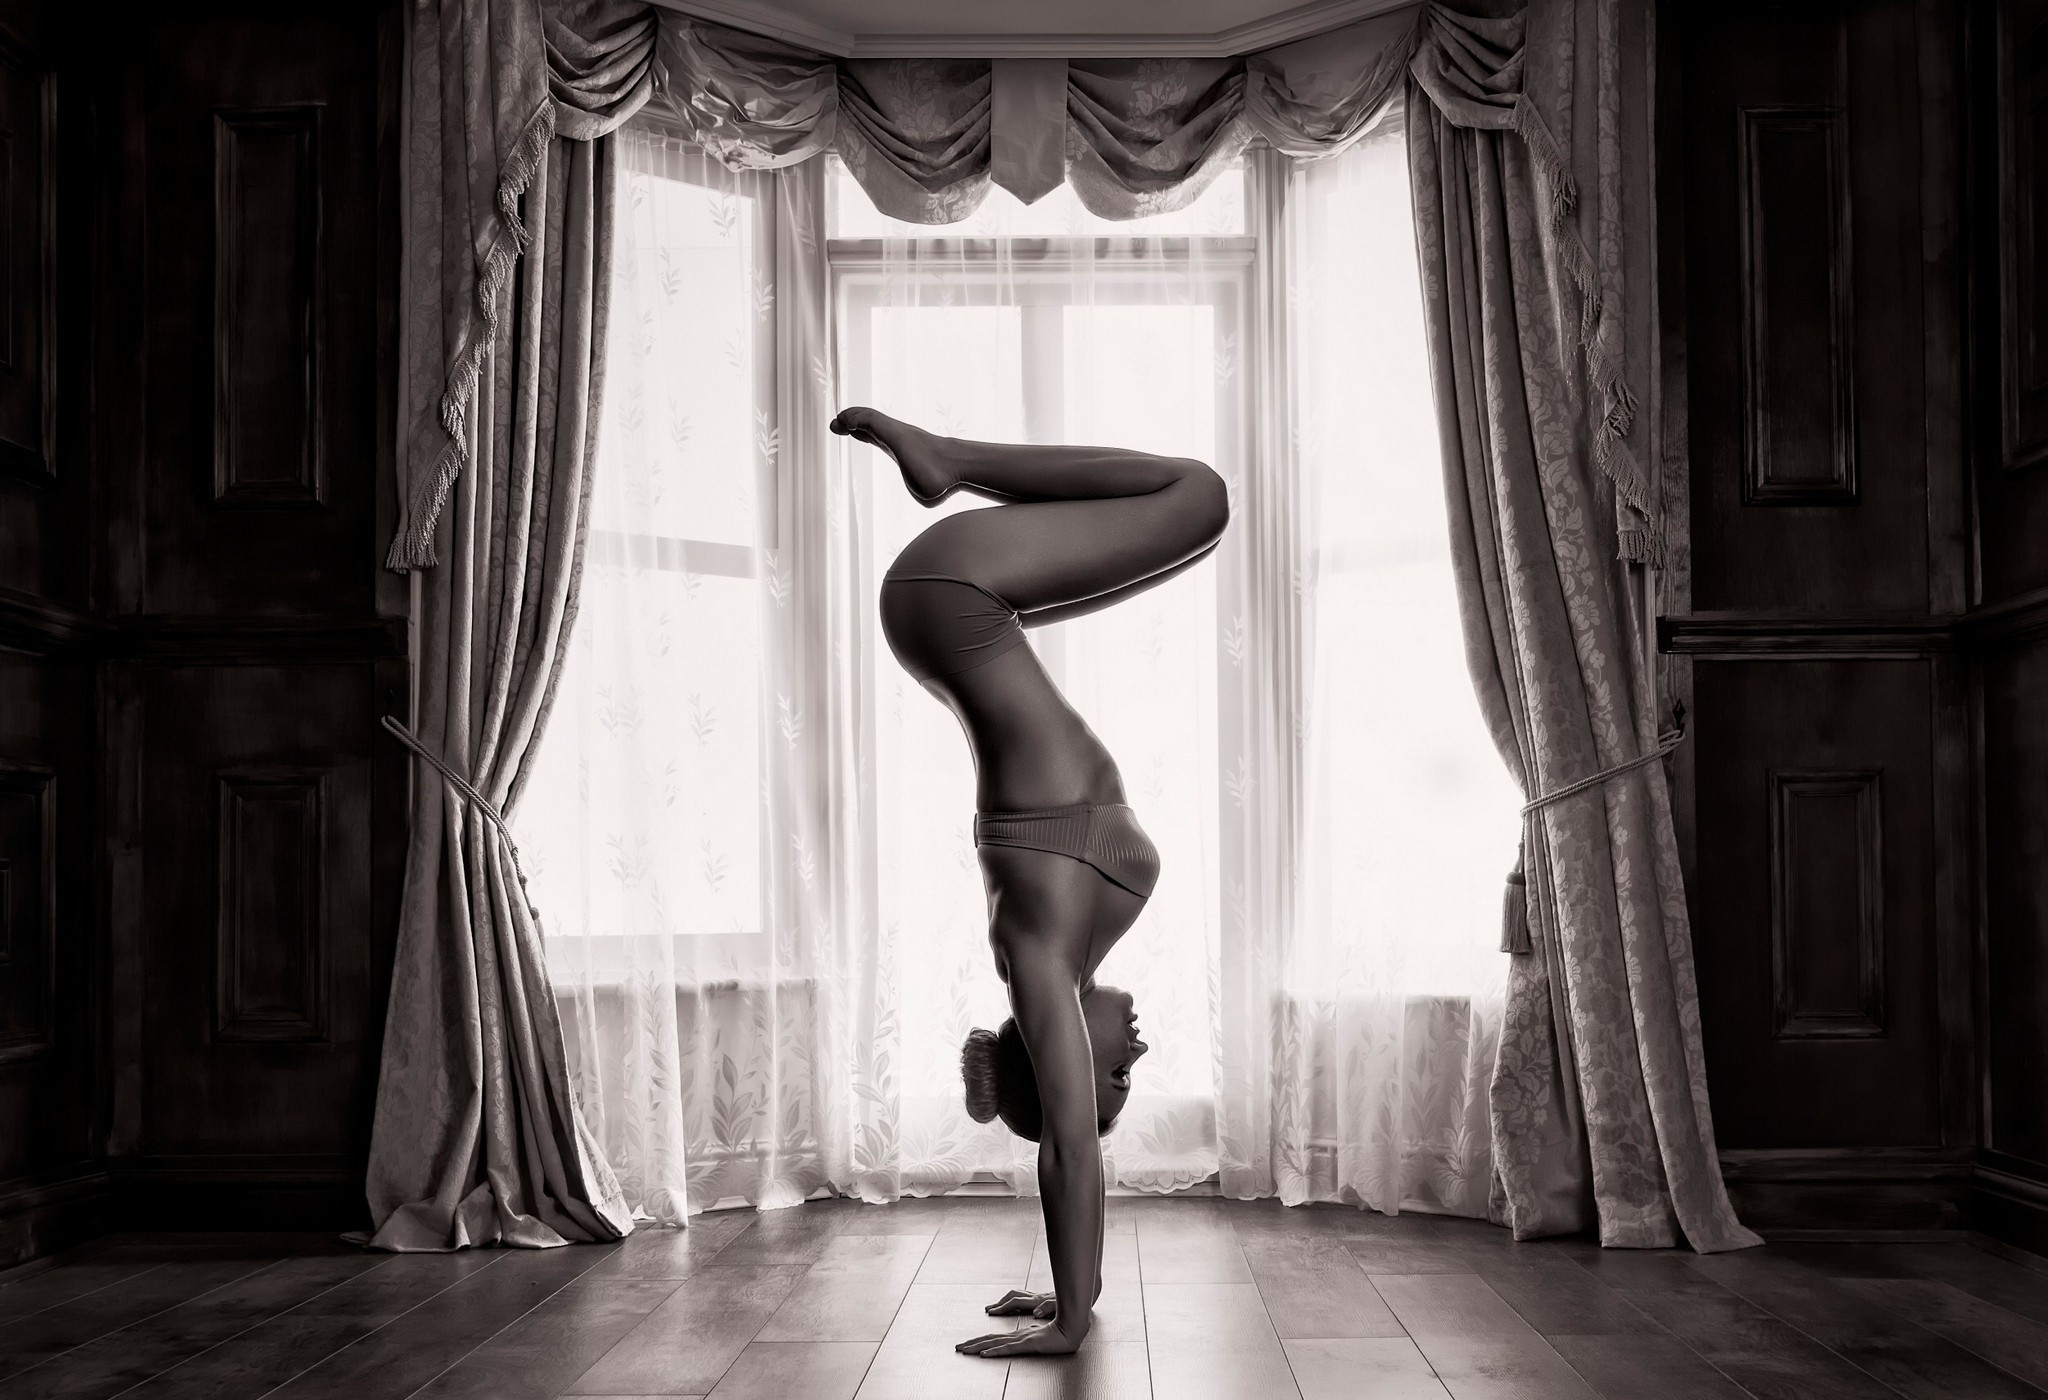 People 2048x1400 women handstand legs curtains window sepia yoga women indoors indoors underwear bra panties